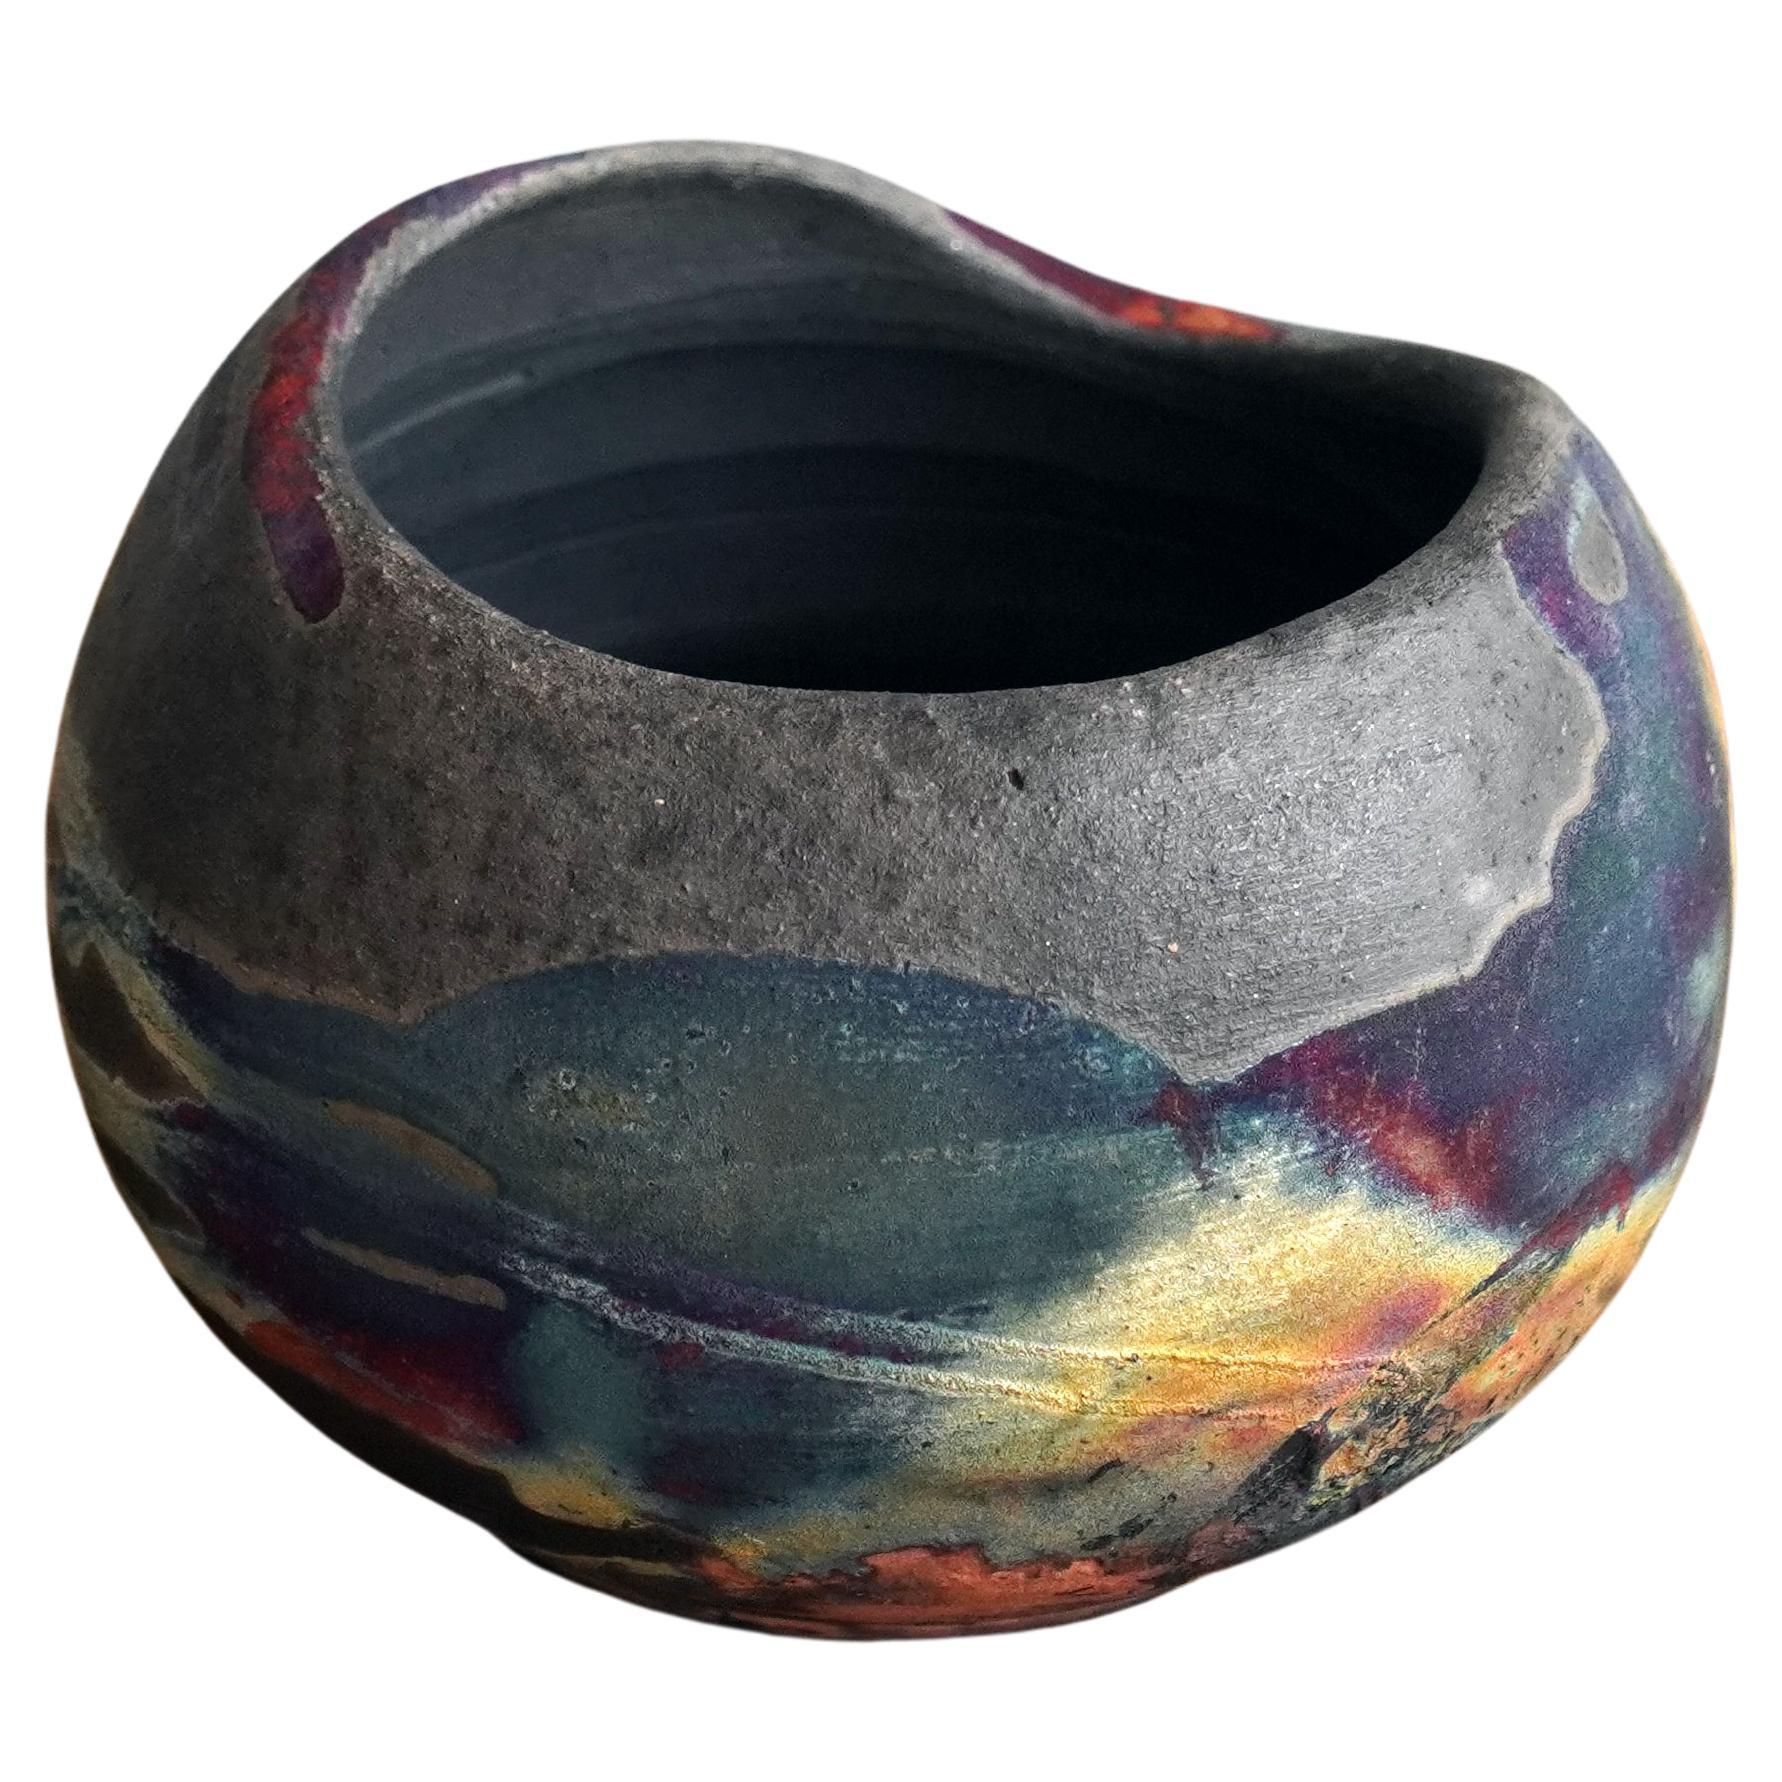 Raaquu Hikari Raku-Keramikvase – Kohlenstoff-Kupfer – Handgefertigte Keramik, Malaysia